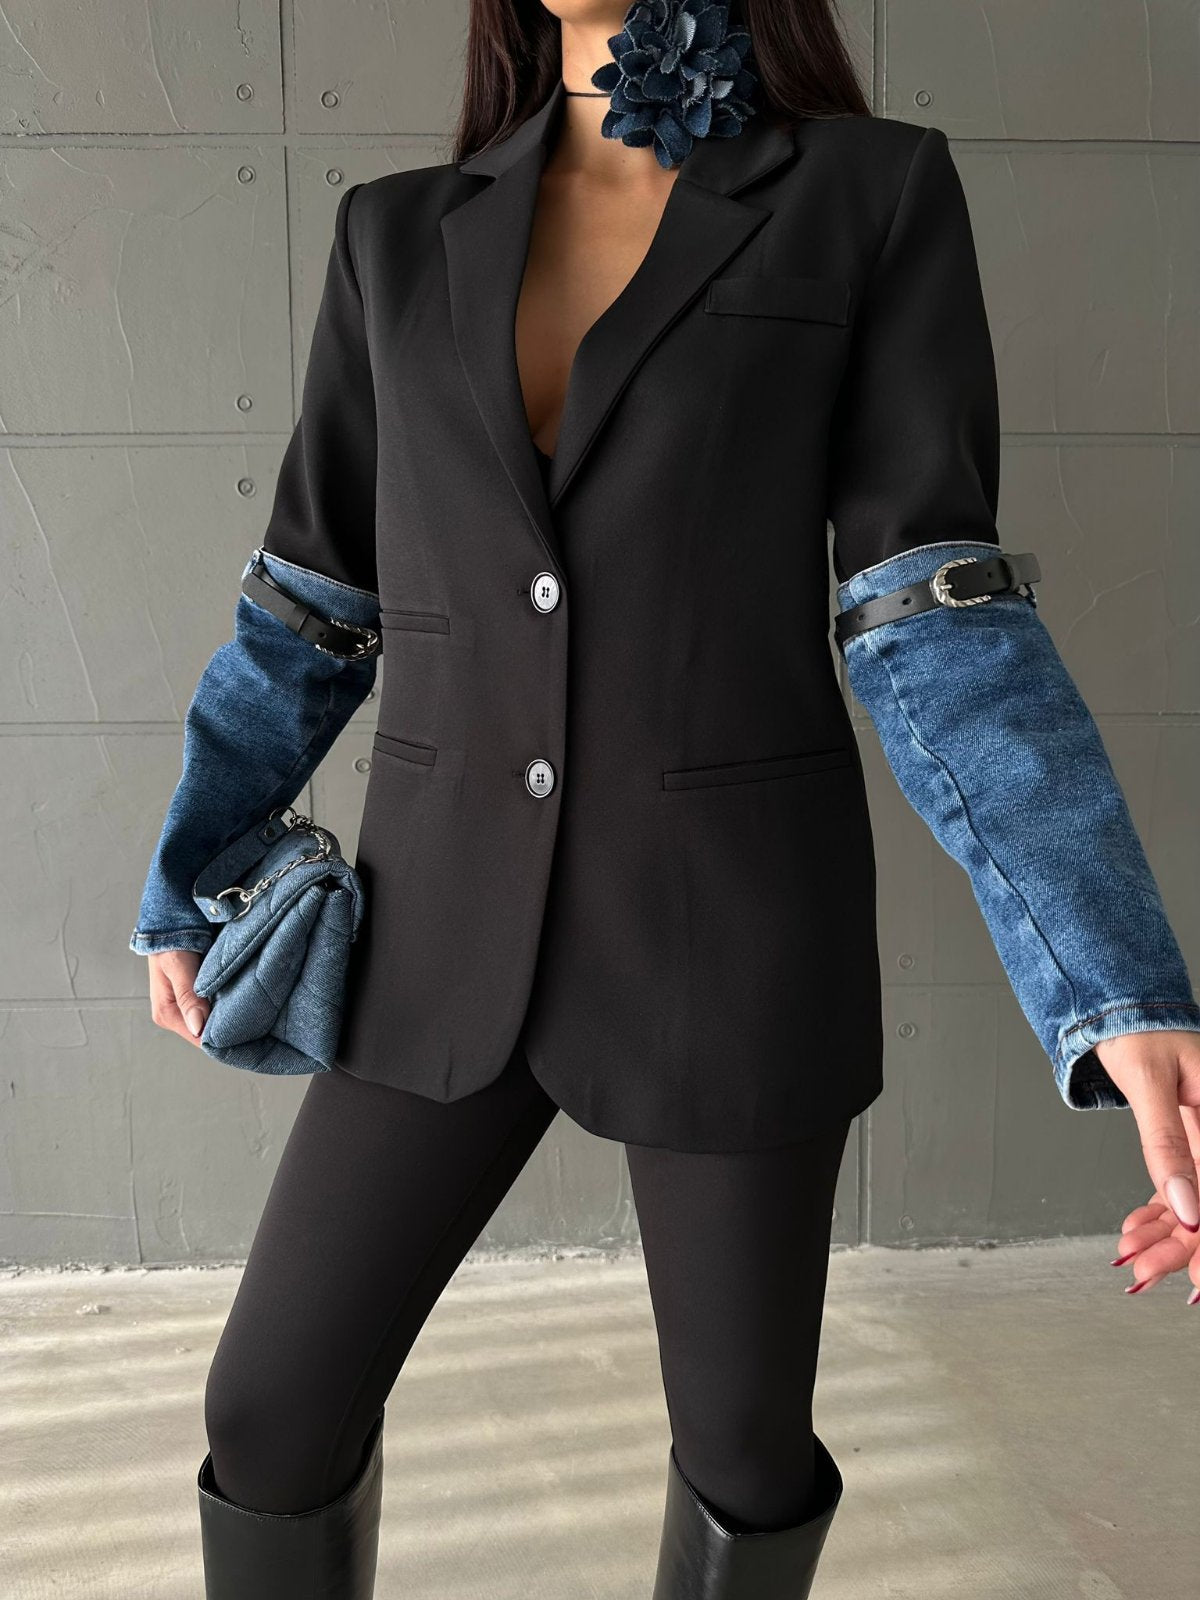 Дамско сако Shelli  https://bvseductive.com/products/дамско-сако-shelli  елегантно дамско сако в черен цвят с изключително ефектни ръкави изработено от приятна и мека материя стилно допълнение към Вашата визия